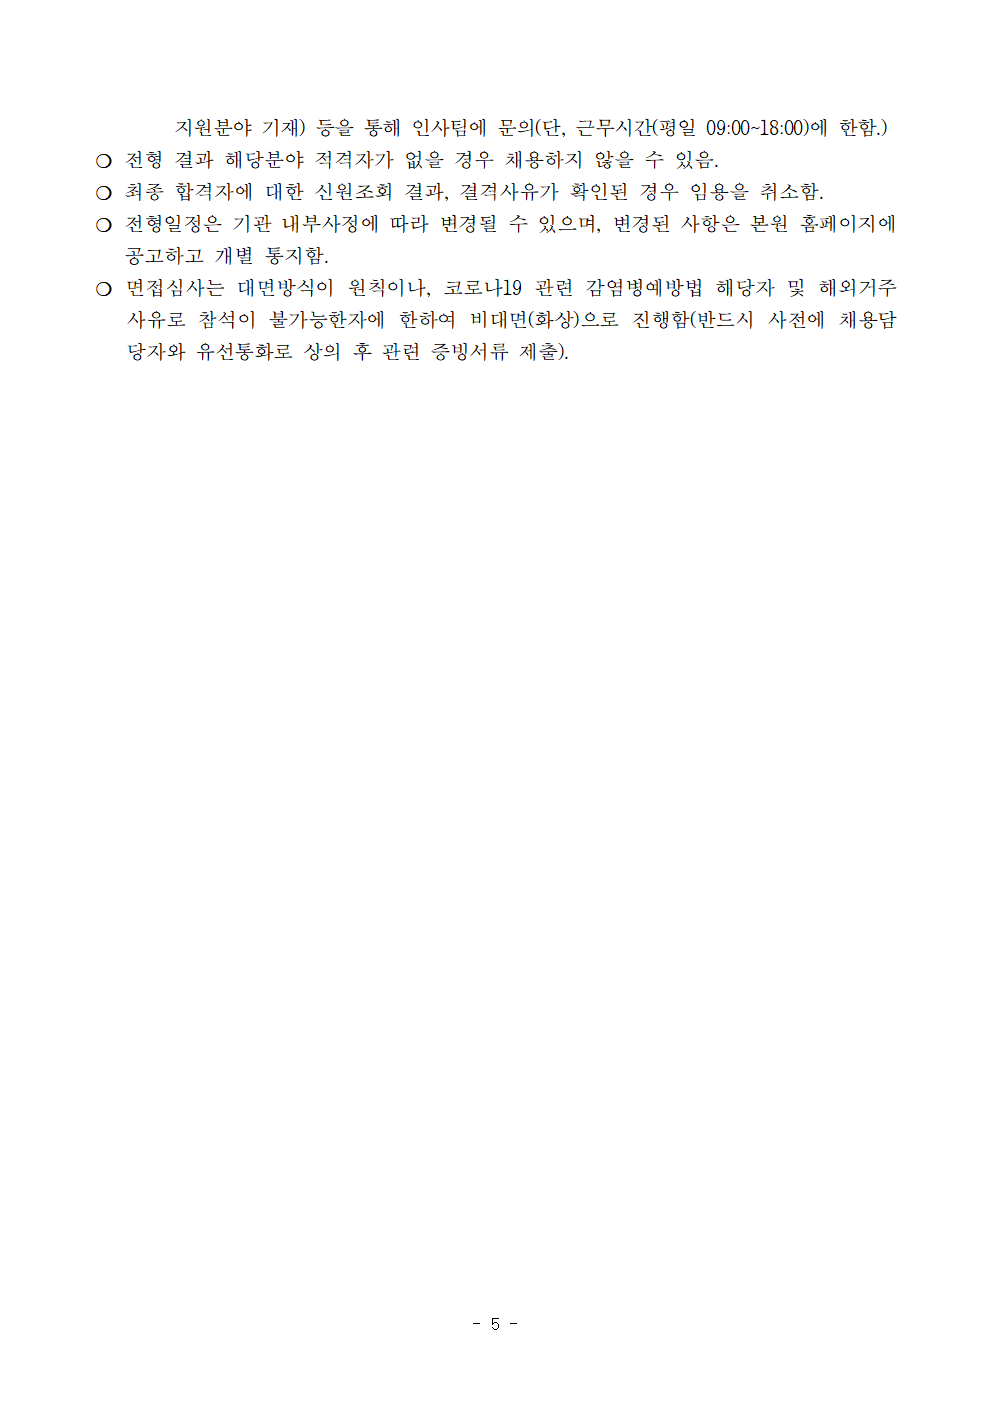 (5/5) [한국청소년정책연구원] 육아휴직 대체인력 채용 공고문 - 자세한 내용은 하단 참조